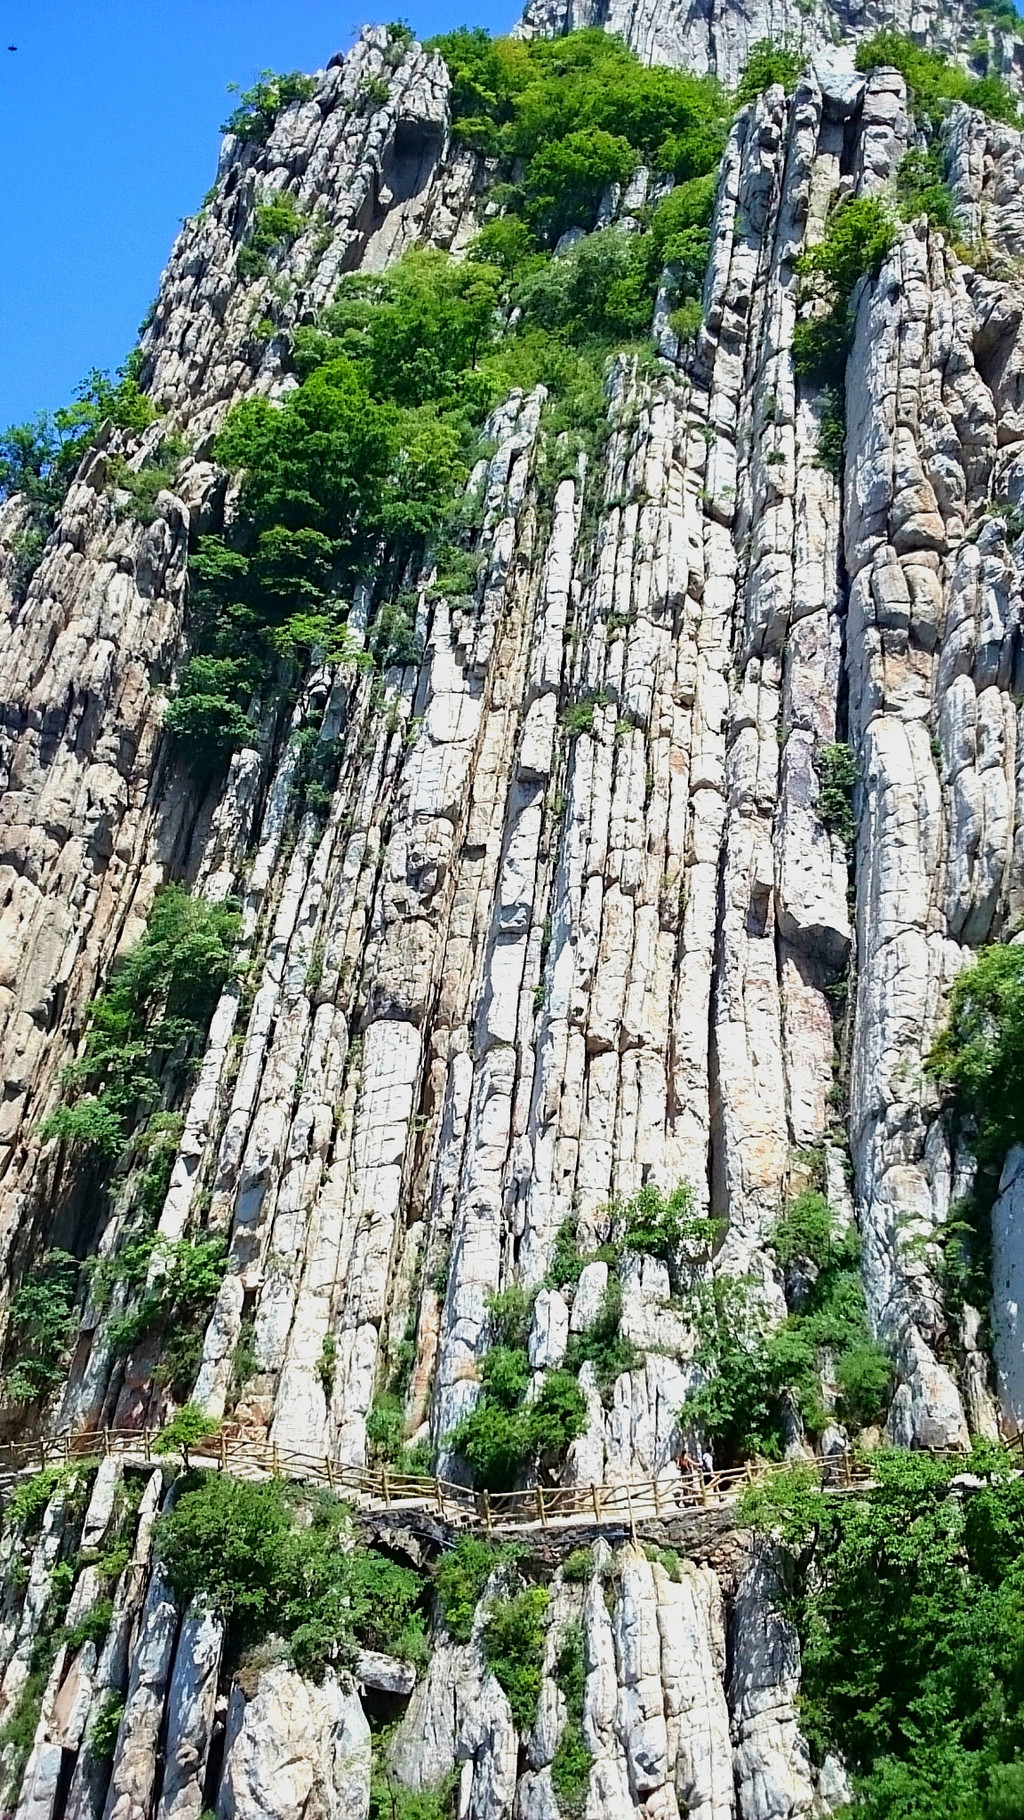 书册崖,嵩山石英岩地貌的标志性景观之一,直立的岩石好像打开的书.